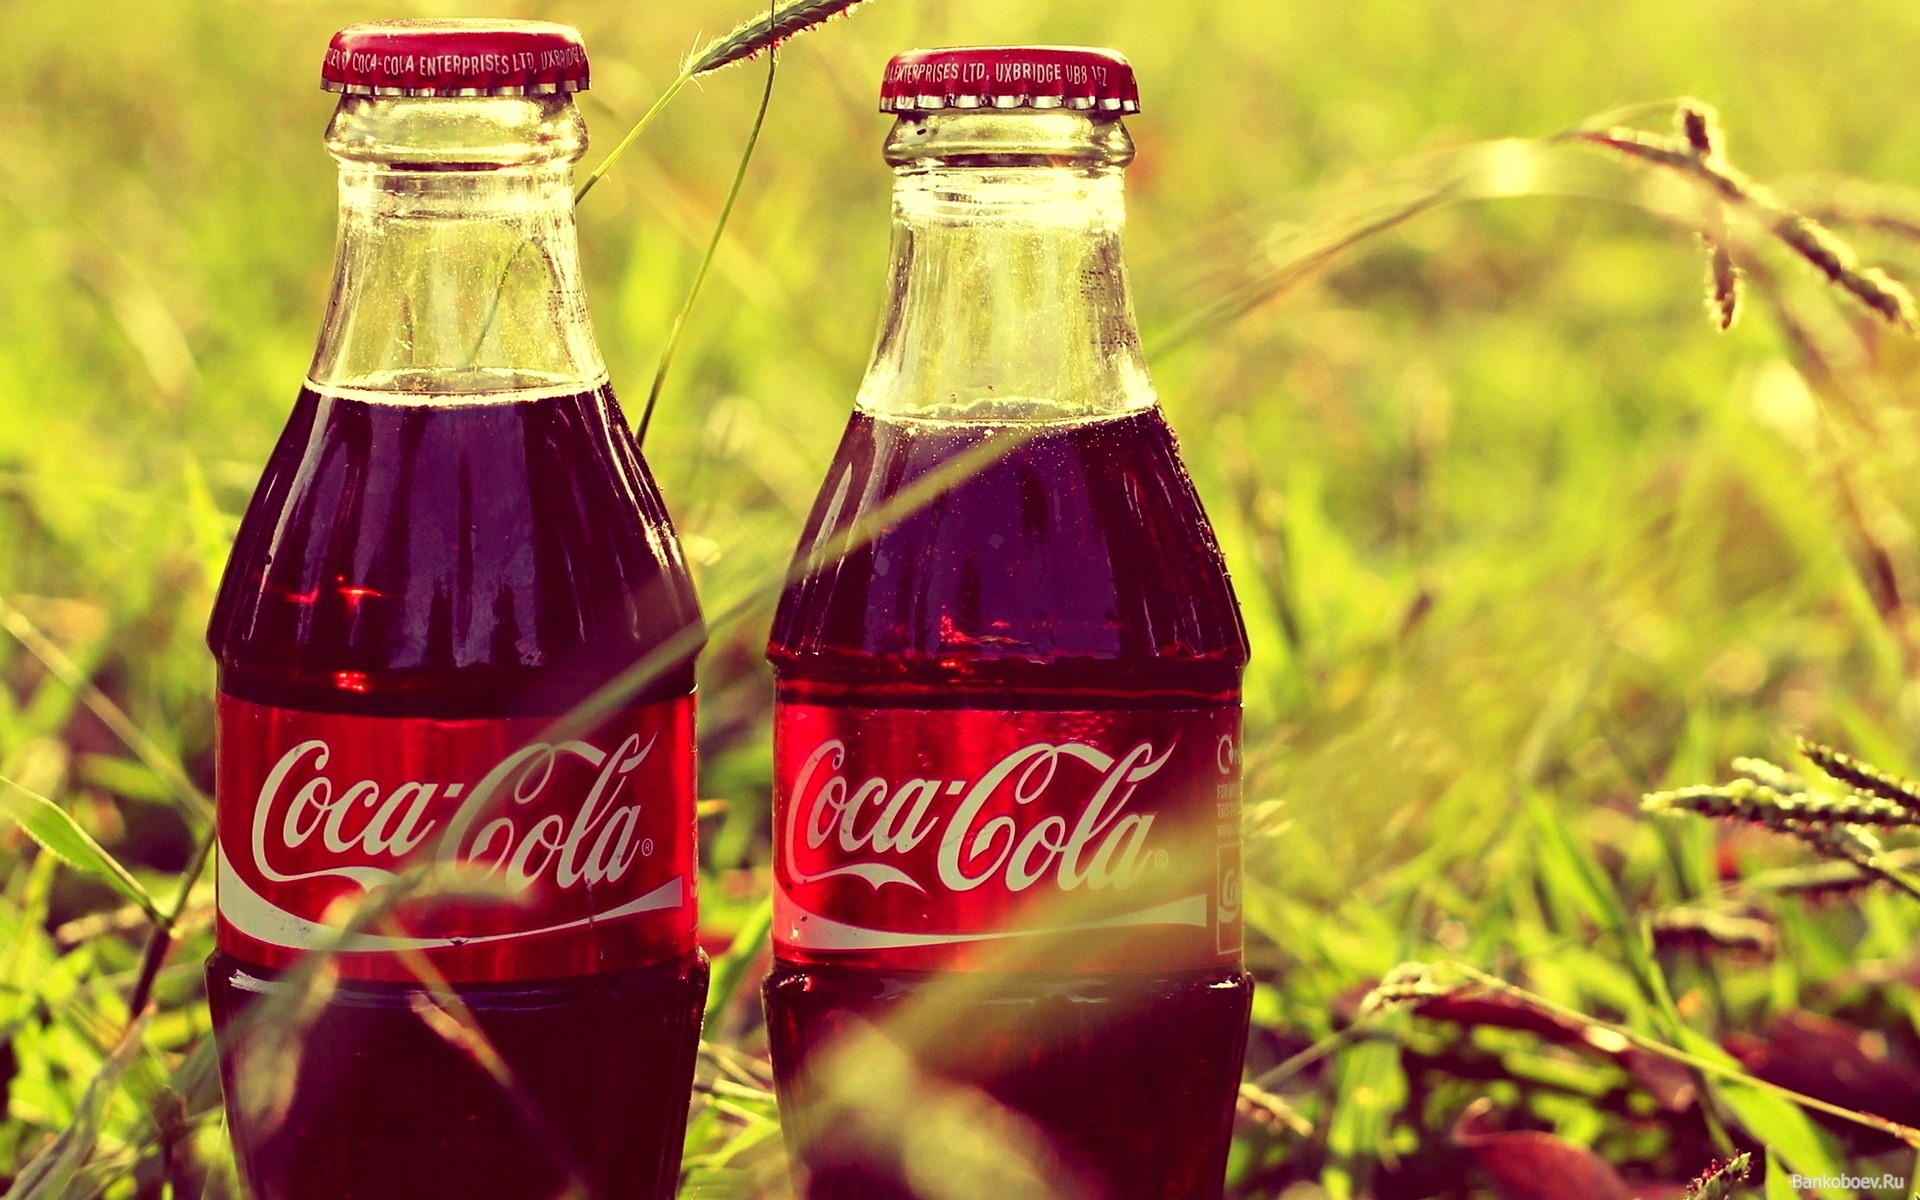 11 экологических инициатив Соса-Cola